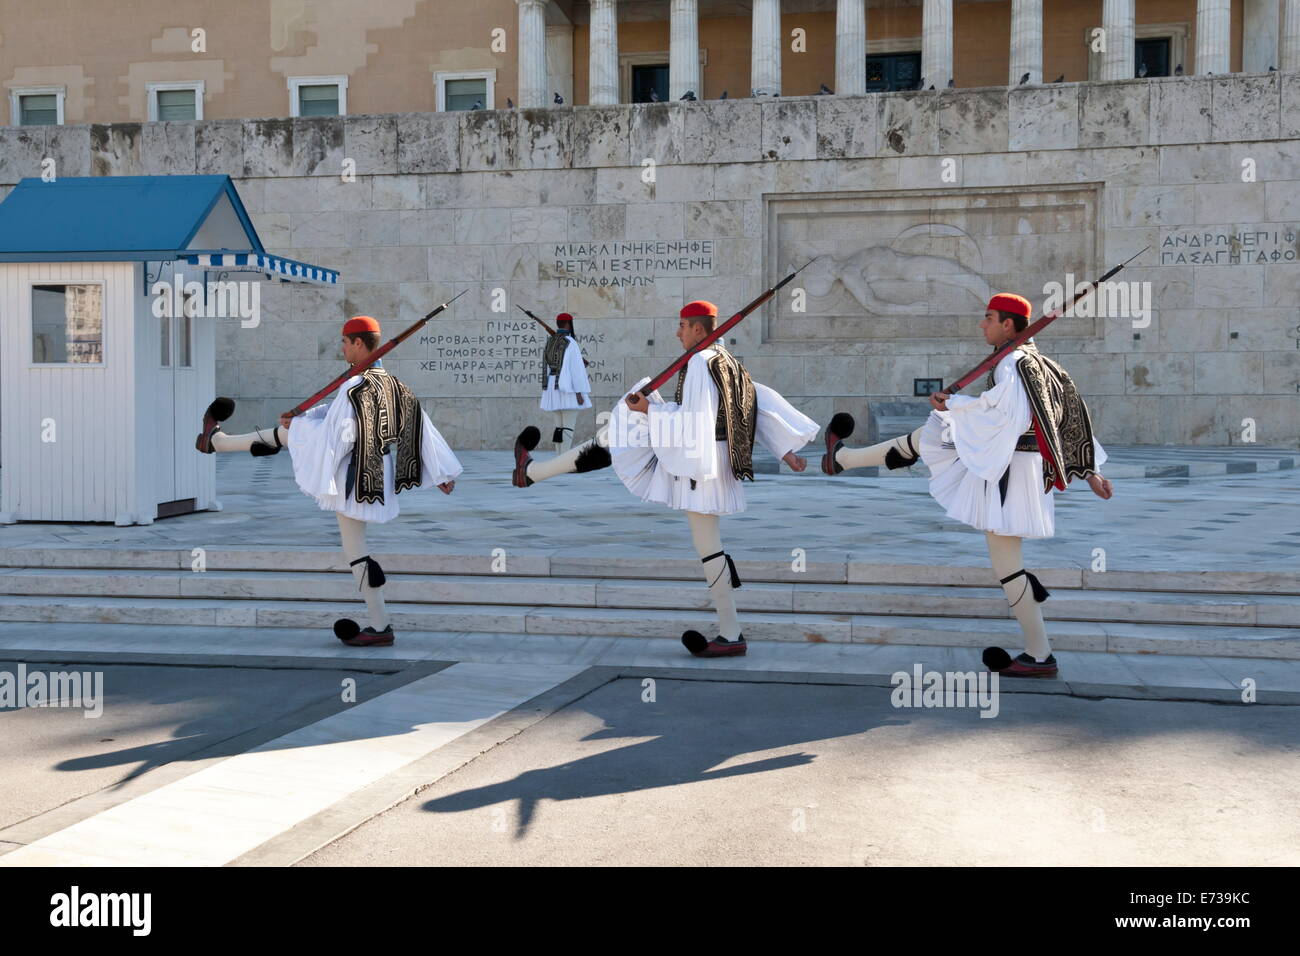 Soldats evzone, relève de la garde, de la Place Syntagma, Athènes, Grèce, Europe Banque D'Images